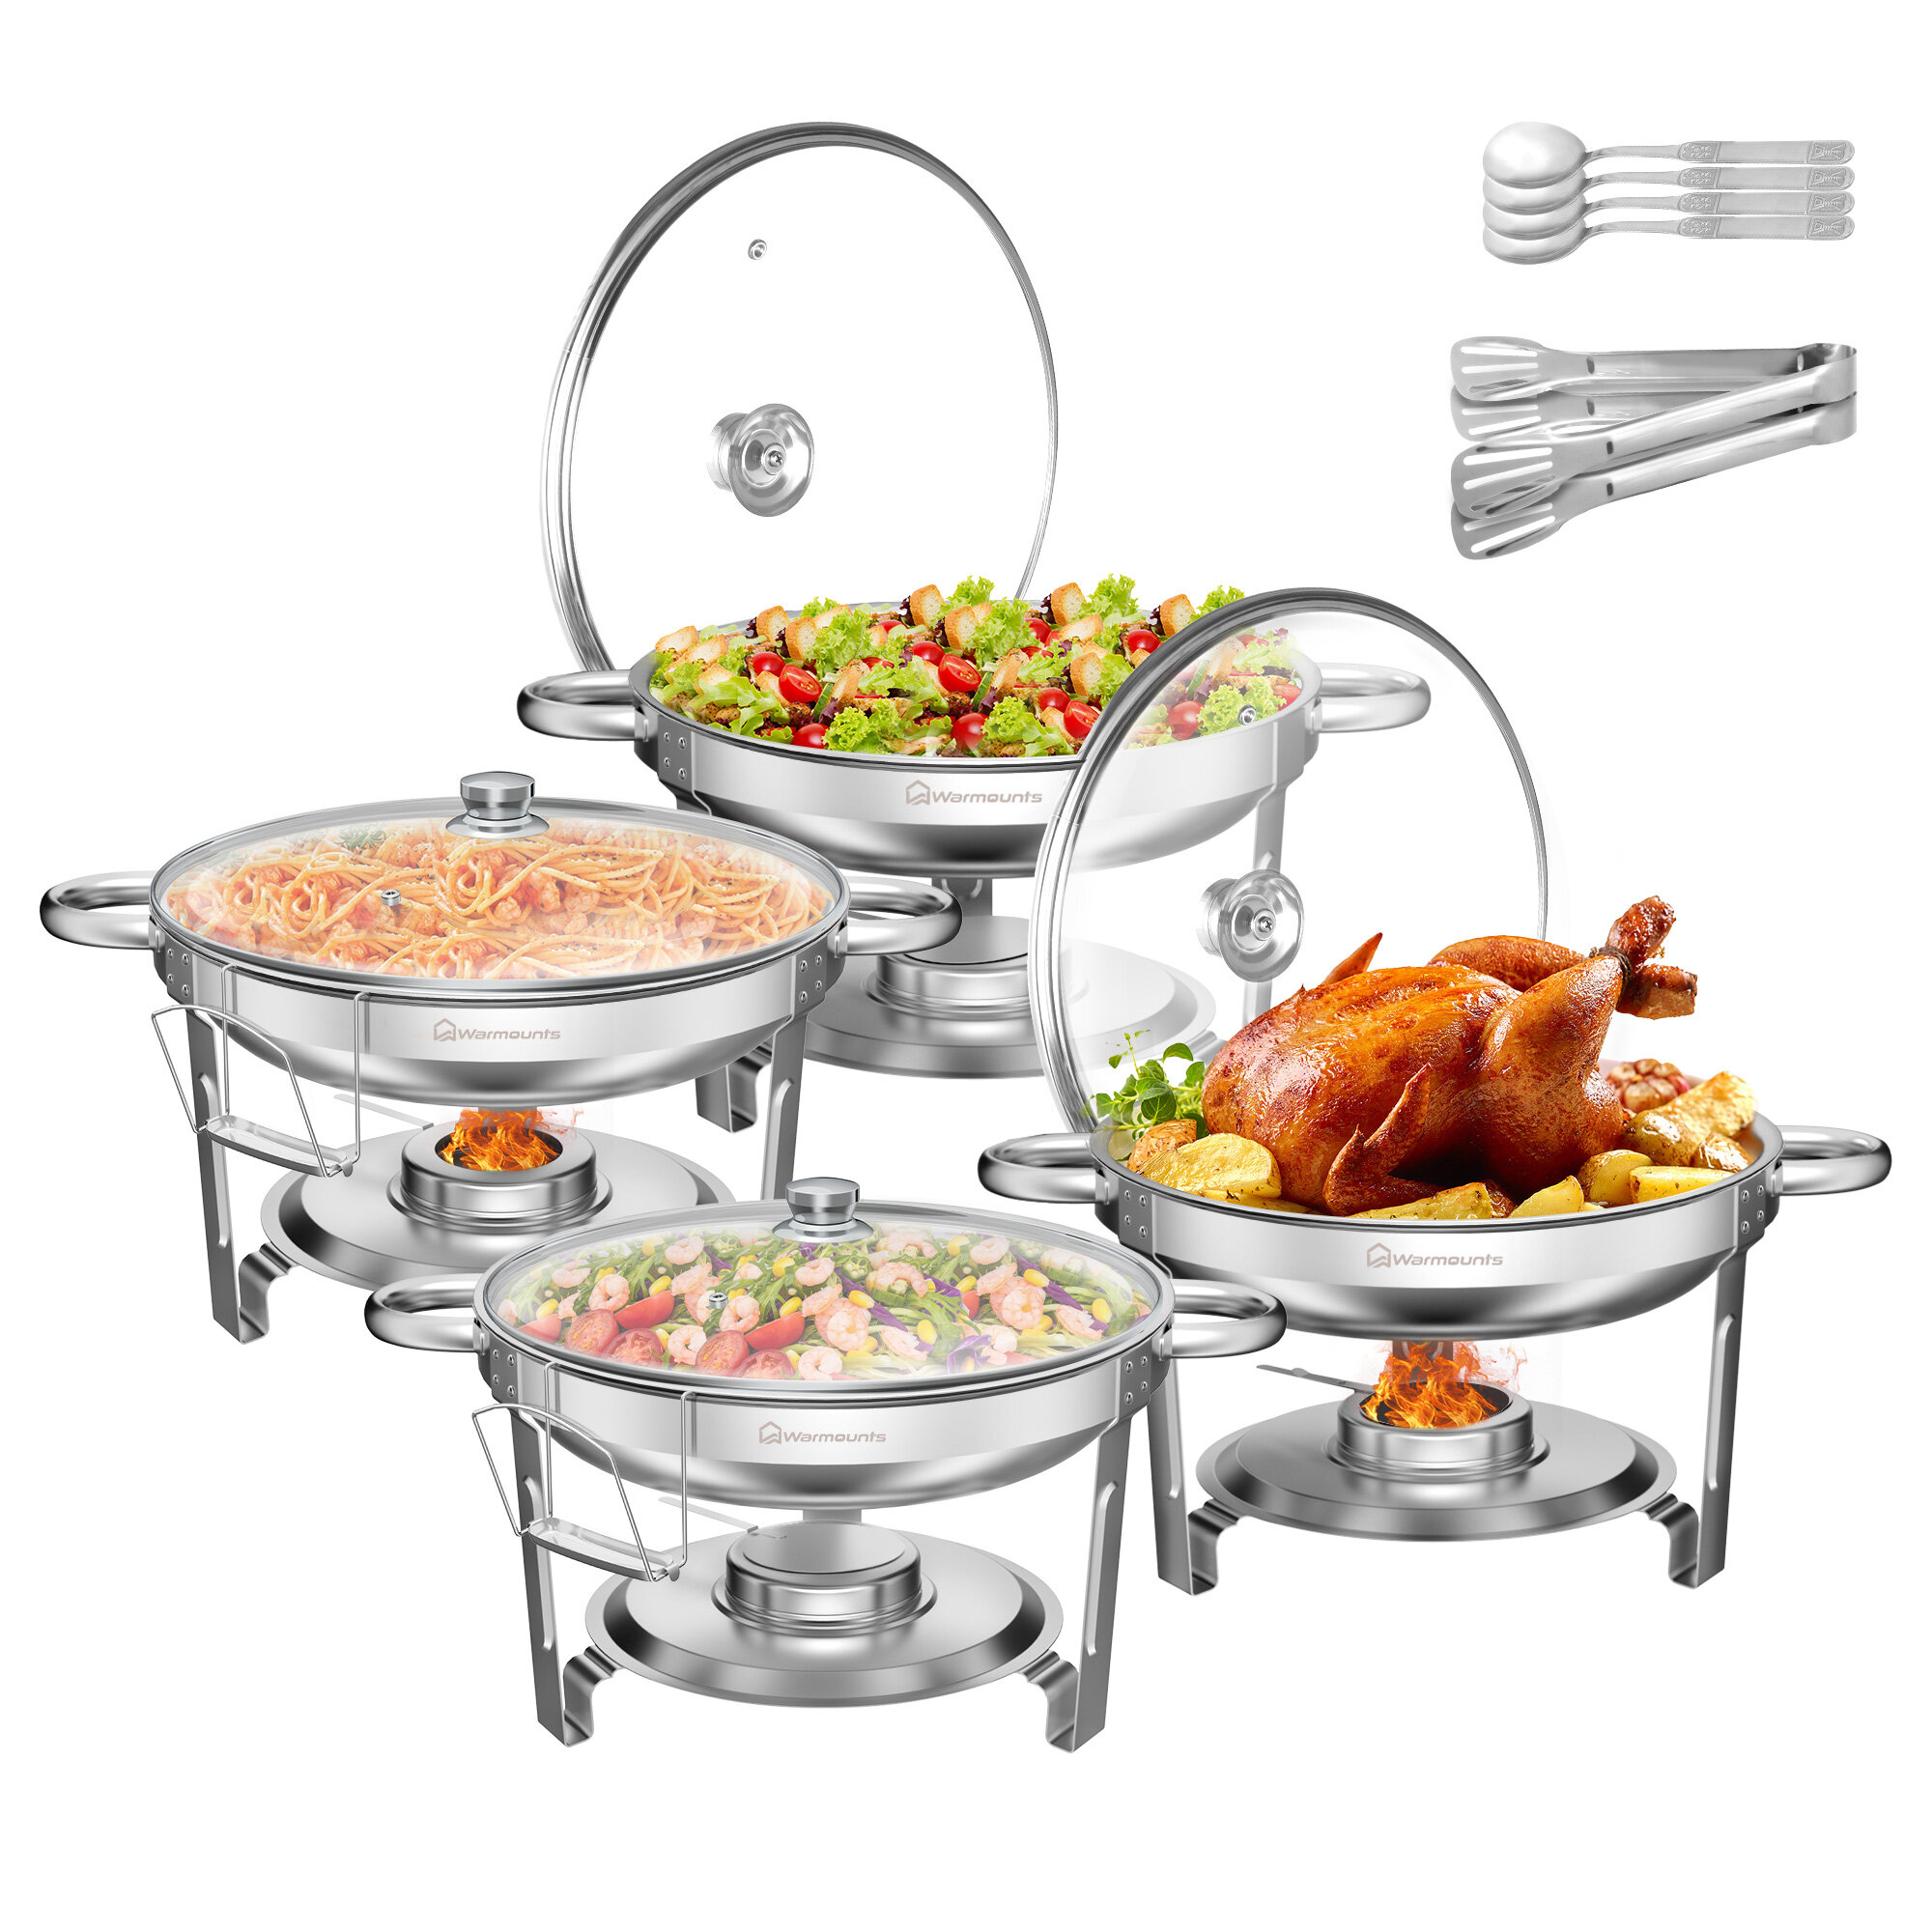 Warmounts 4-Pack Chafing Dish Buffet készlet, 5QT Kör alakú Büfé Szerver és Melegentartó készlet, Rozsdamentes acél Catering Étel Melegítővel, Üveglappal és Tartóval Partihoz, Otthonhoz, Kertre, Esküvőre